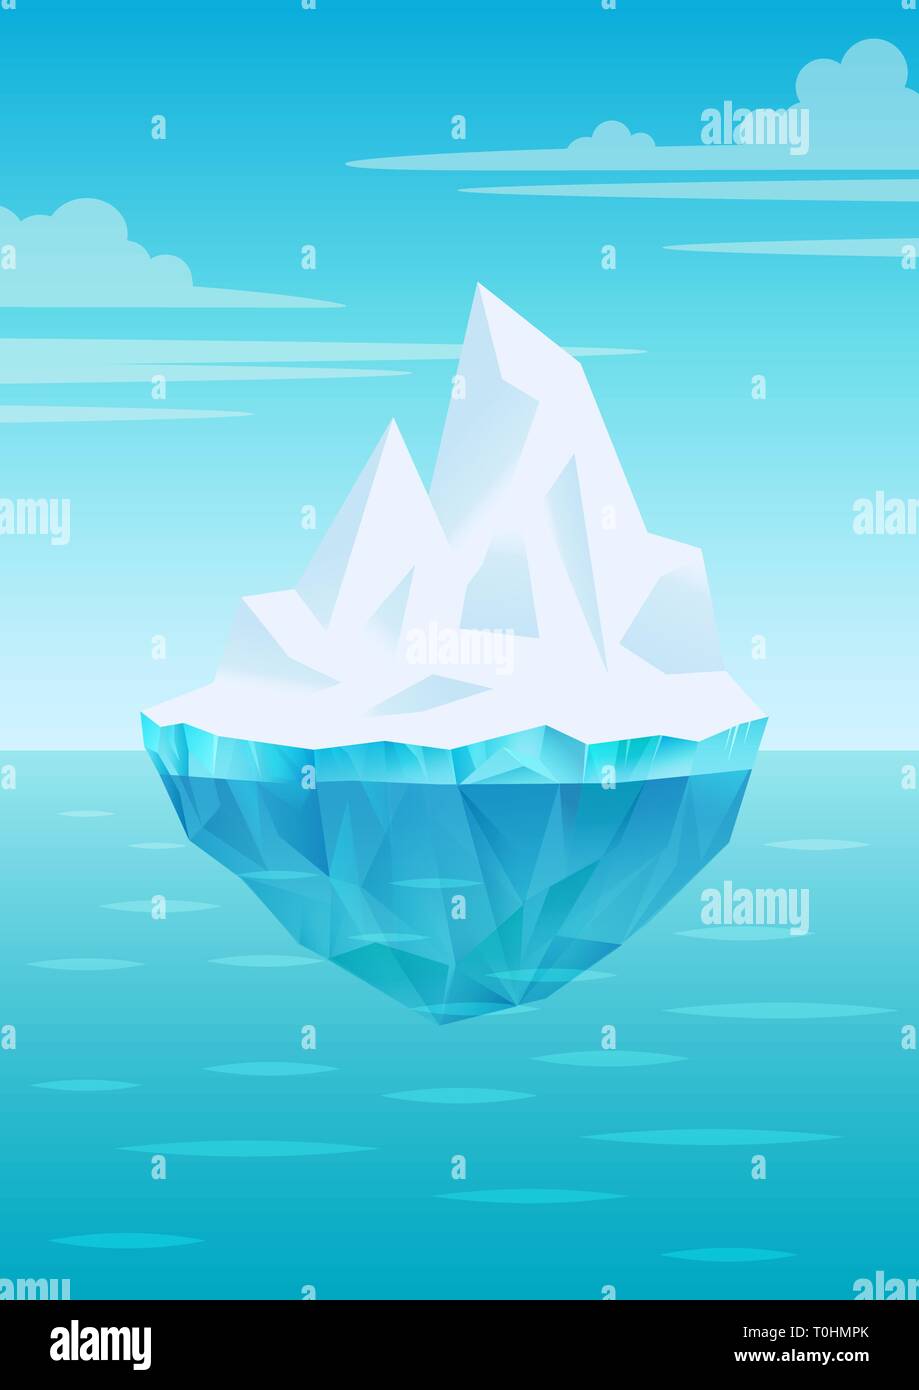 Eisberg auf dem Wasser schwimmend Wellen mit Unterwasser teil, strahlend blauen Himmel mit Wolken, Süßwasser-Eis, Gletscher oder schelfeis Stück, Vektor Stock Vektor